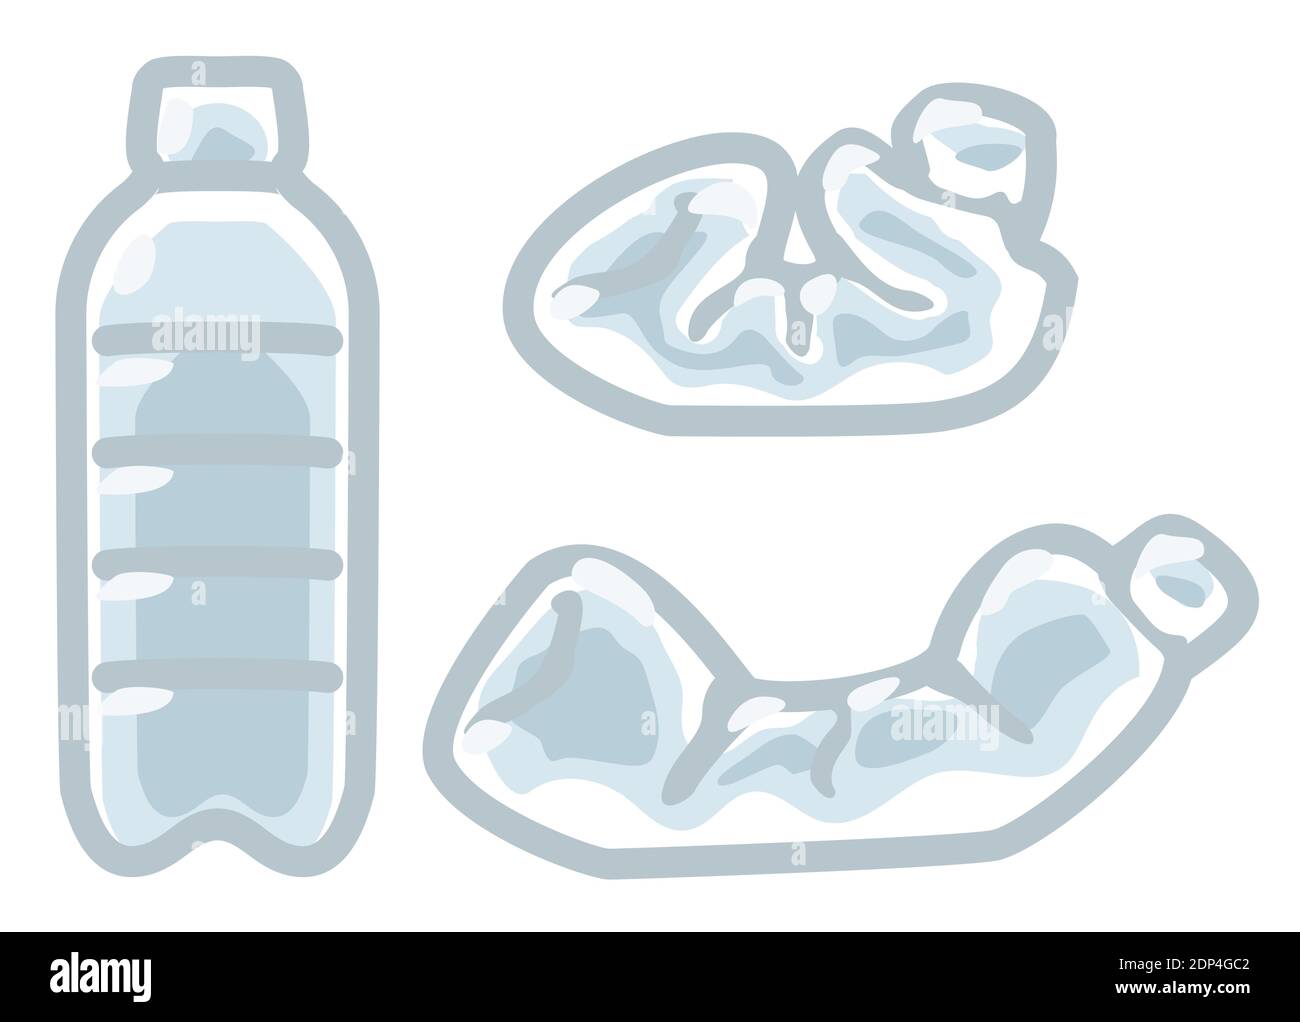 Vectores e ilustraciones de Botellas plastico para descargar gratis